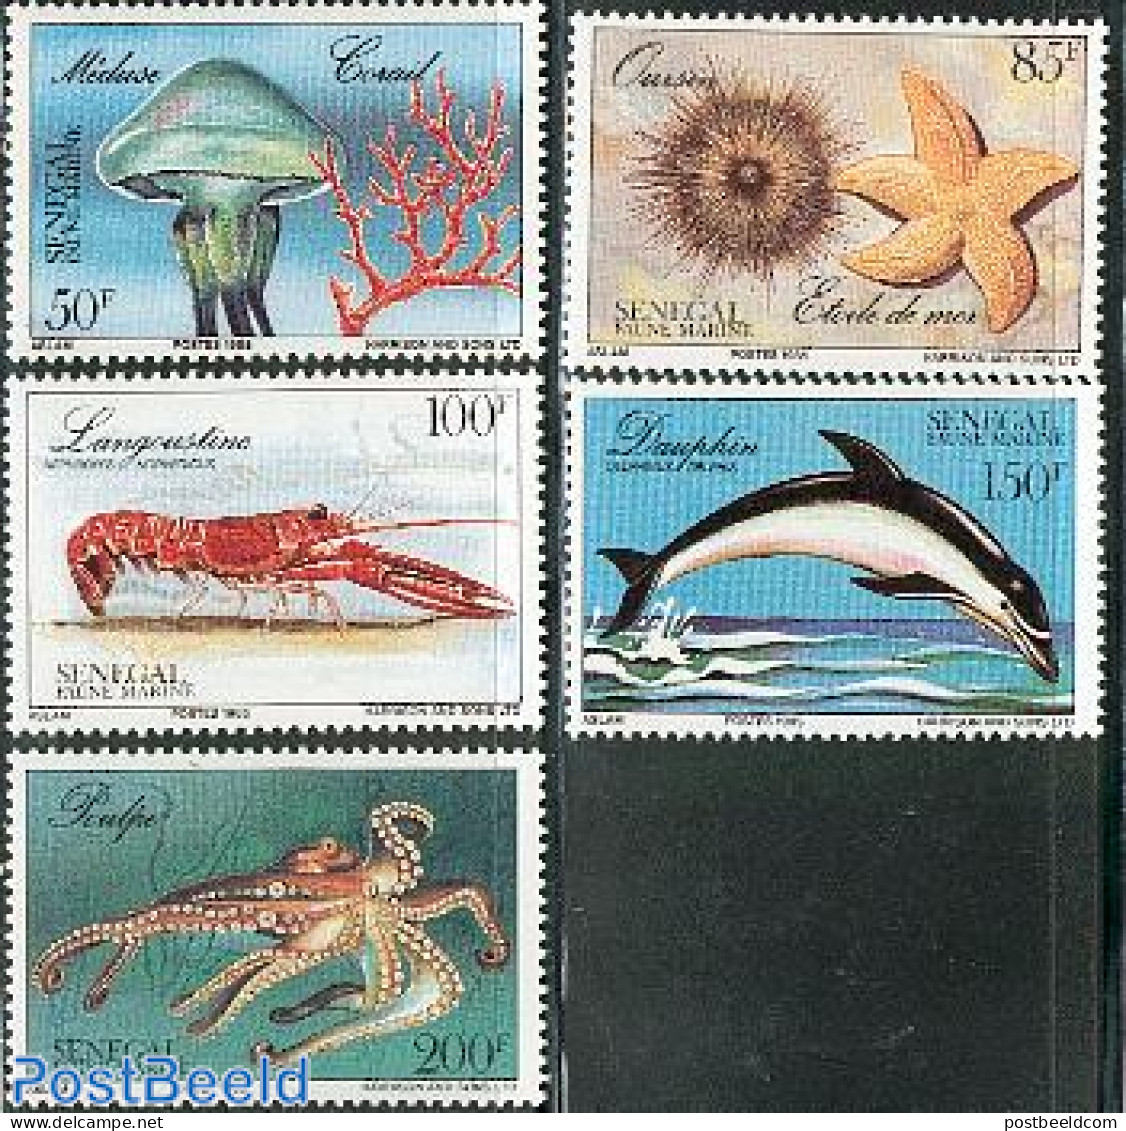 Senegal 1987 Marine Life 5v, Mint NH, Nature - Sea Mammals - Shells & Crustaceans - Crabs And Lobsters - Meereswelt